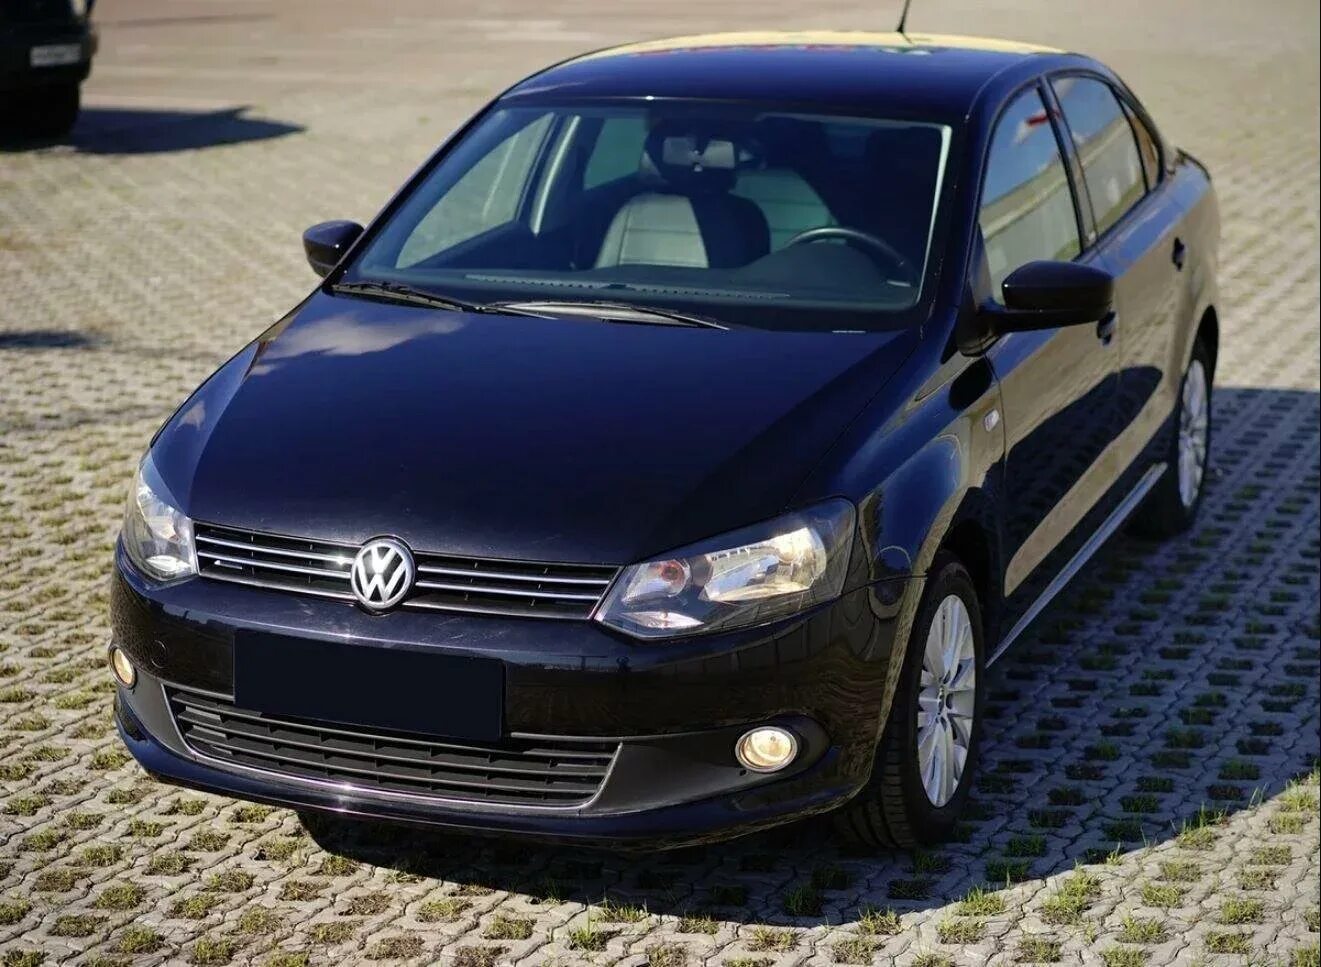 Купить поло седан спб. Фольксваген поло 5. Volkswagen Polo sedan 2015. Фольксваген поло 2015 черный. Volkswagen Polo 5 2015 чёрный.